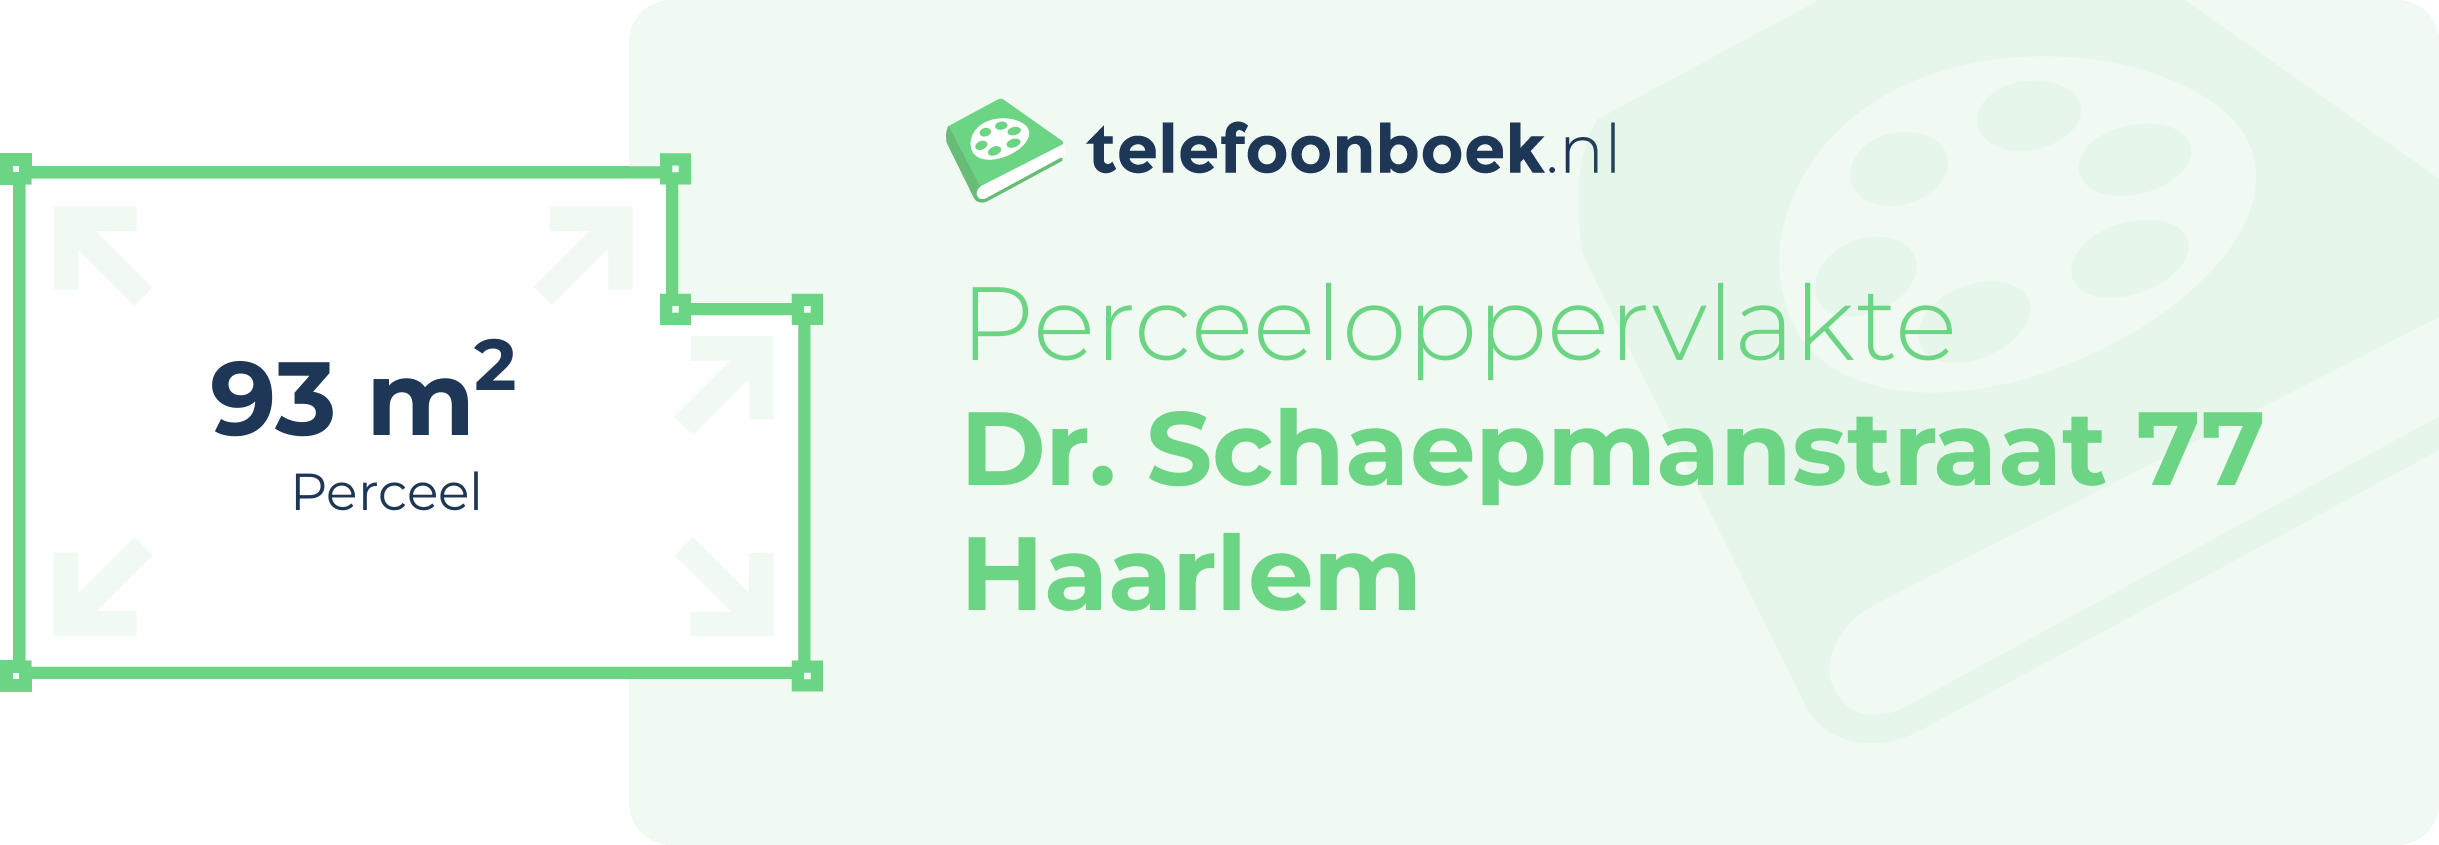 Perceeloppervlakte Dr. Schaepmanstraat 77 Haarlem